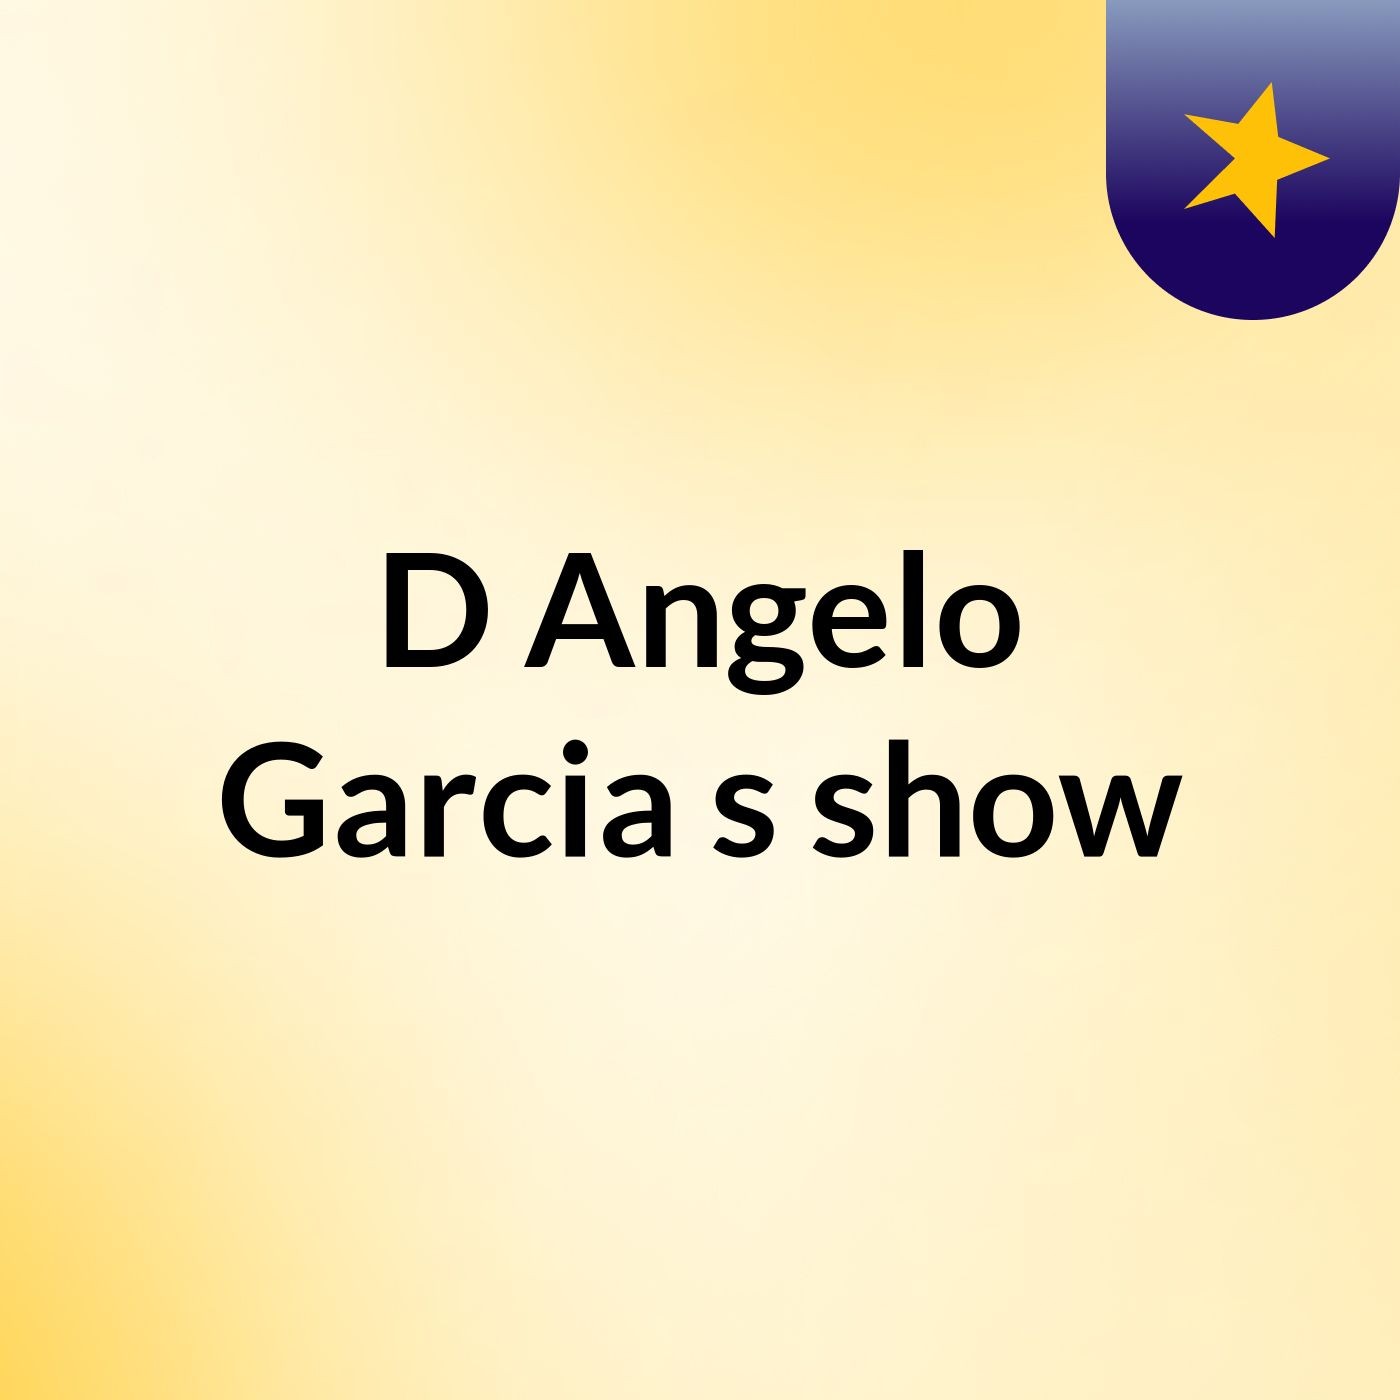 D'Angelo Garcia's show